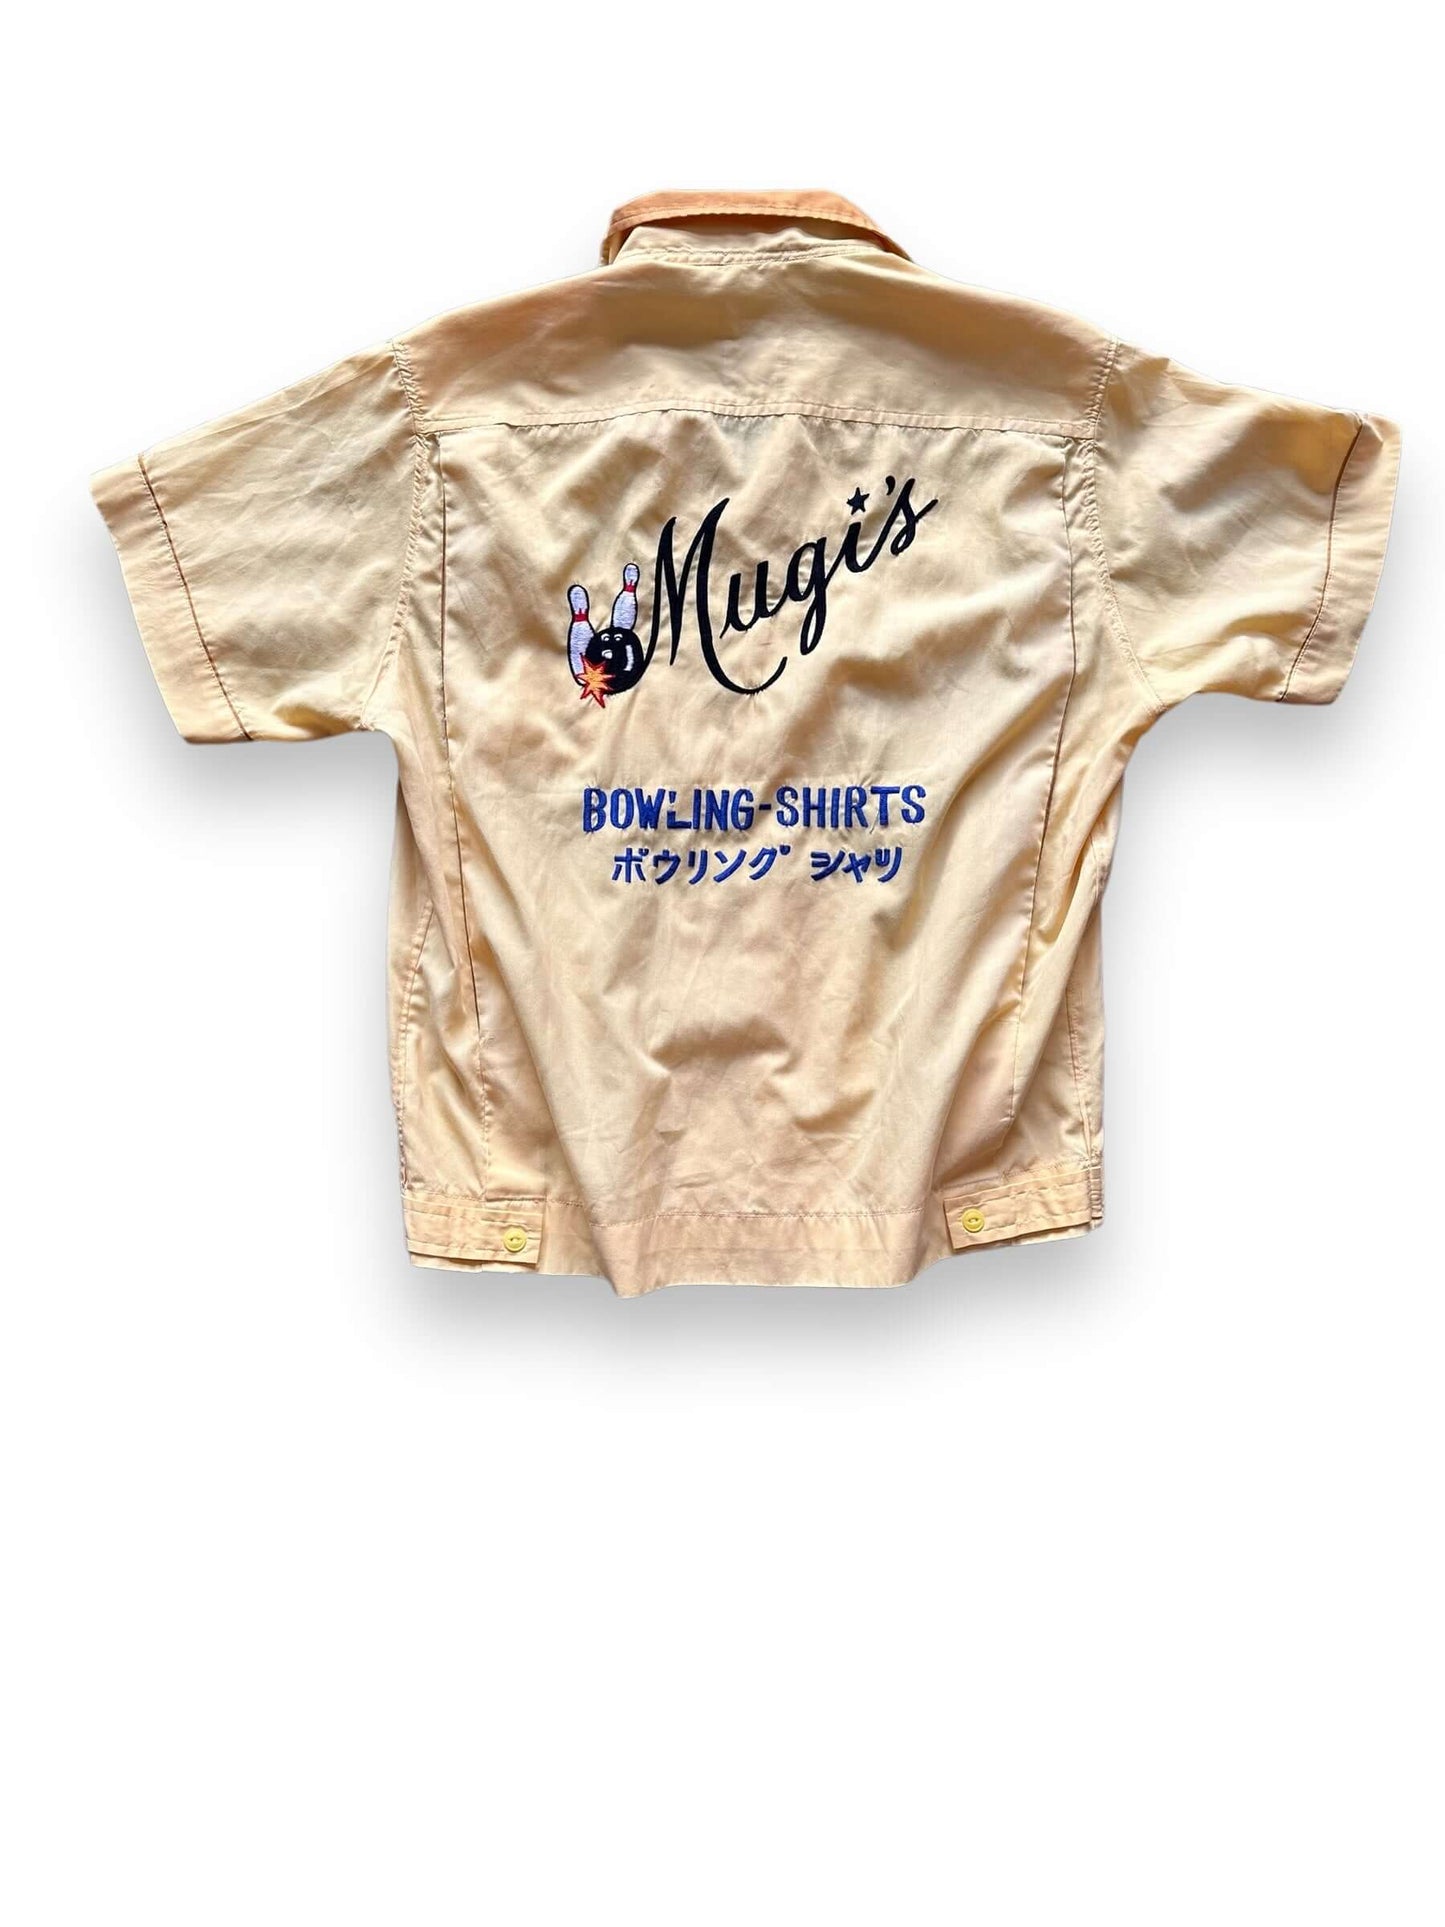 Rear View of Vintage Mugi's Okinawa Bowling Shirt SZ L | Vintage Bowling Shirt Seattle